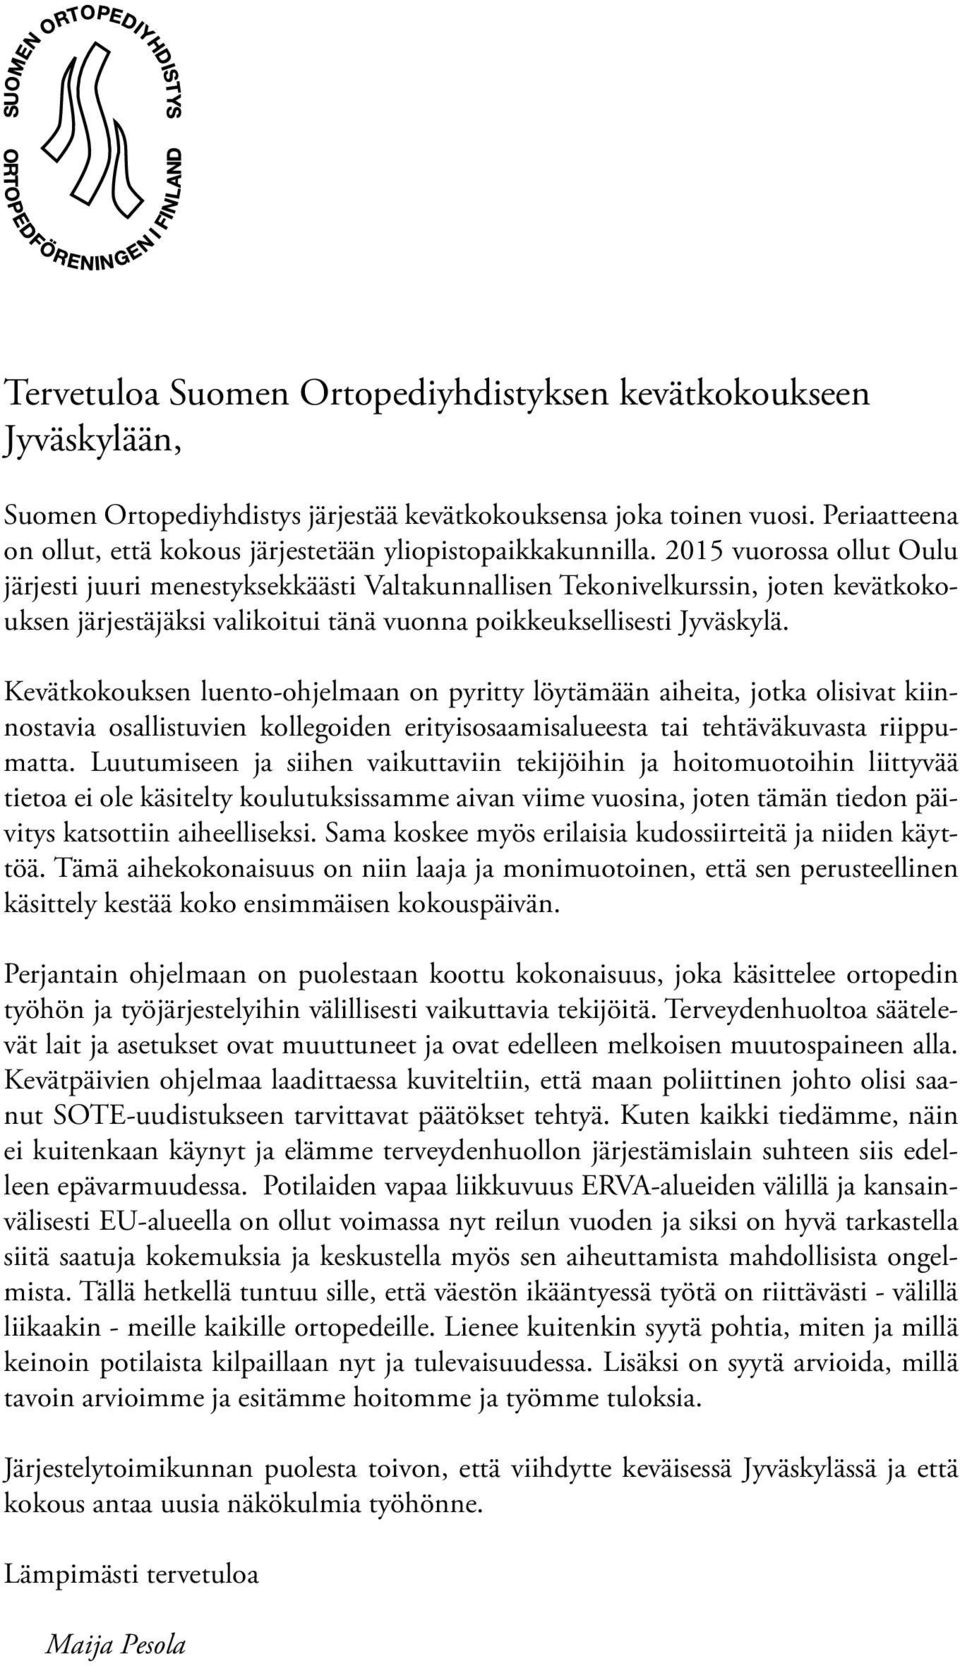 2015 vuorossa ollut Oulu järjesti juuri menestyksekkäästi Valtakunnallisen Tekonivelkurssin, joten kevätkokouksen järjestäjäksi valikoitui tänä vuonna poikkeuksellisesti Jyväskylä.